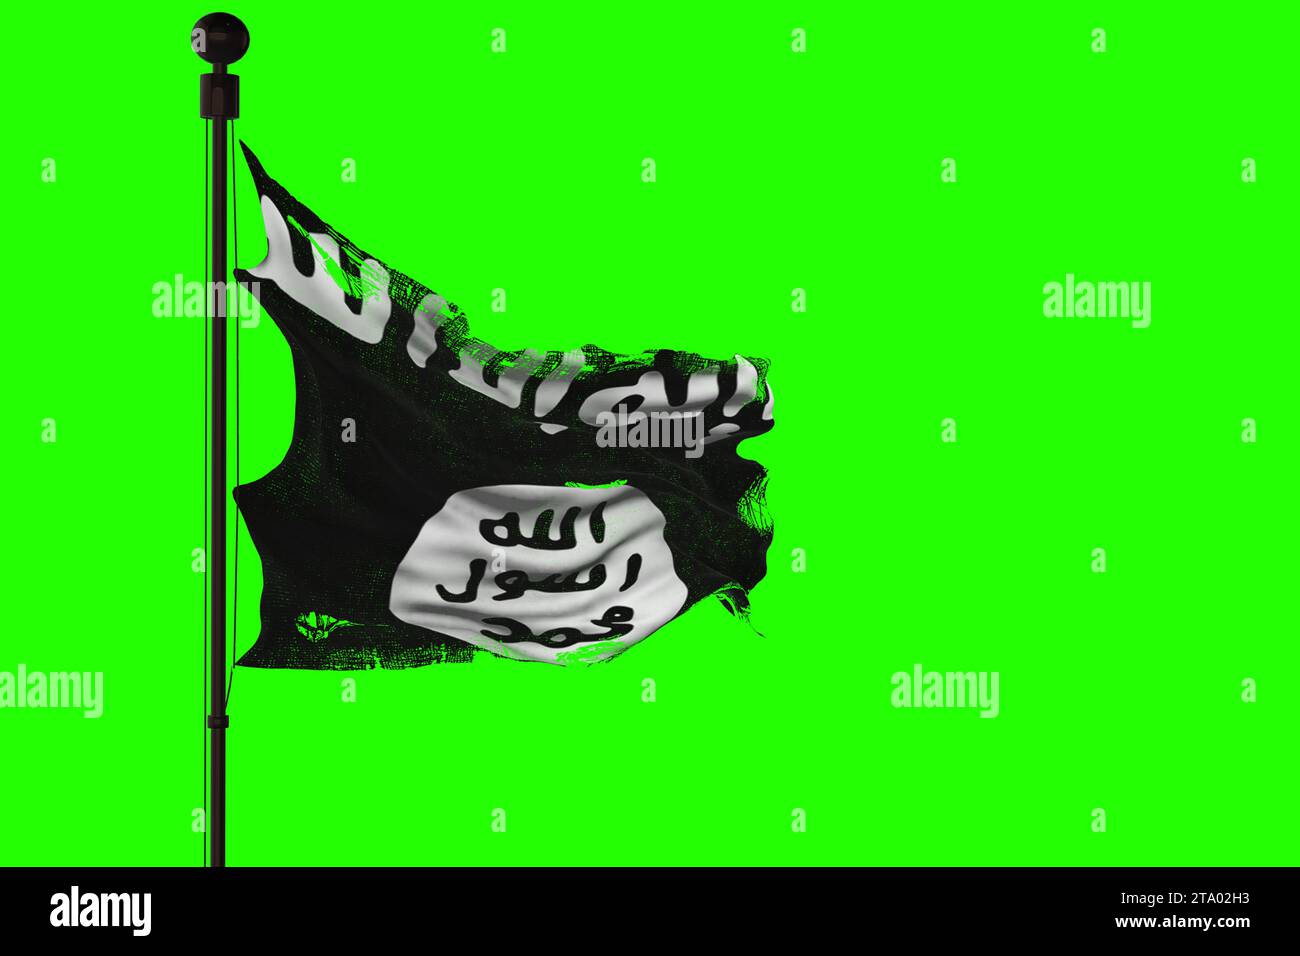 Schwenkende Stofffahne des is des islamisch-arabischen Staates isil des irak und syriens, schwarz-weiße Farbe des Terrorkrieges auf Chroma-Schlüssel-grünem Bildschirm Hintergrund Stockfoto